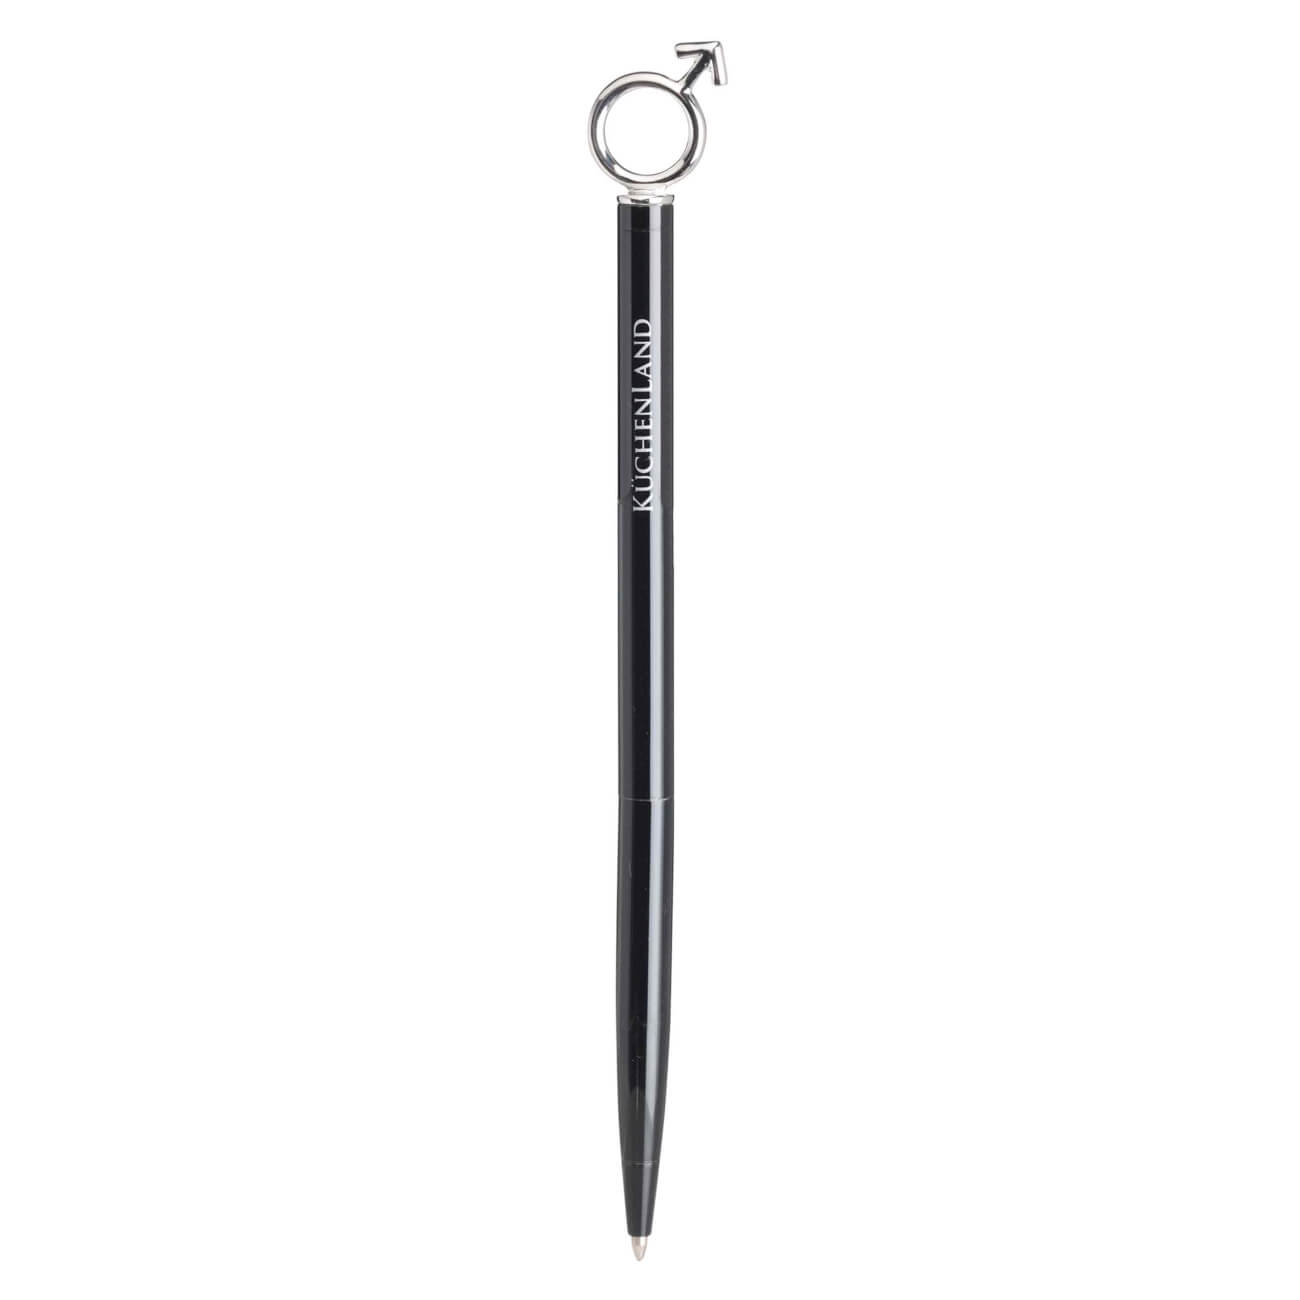 Ручка шариковая, 14 см, с фигуркой, металл, черная, Символ мужчины, Draw figure ручка шариковая подарочная поворотная в пластиковом футляре бордовая с серебристыми вставками